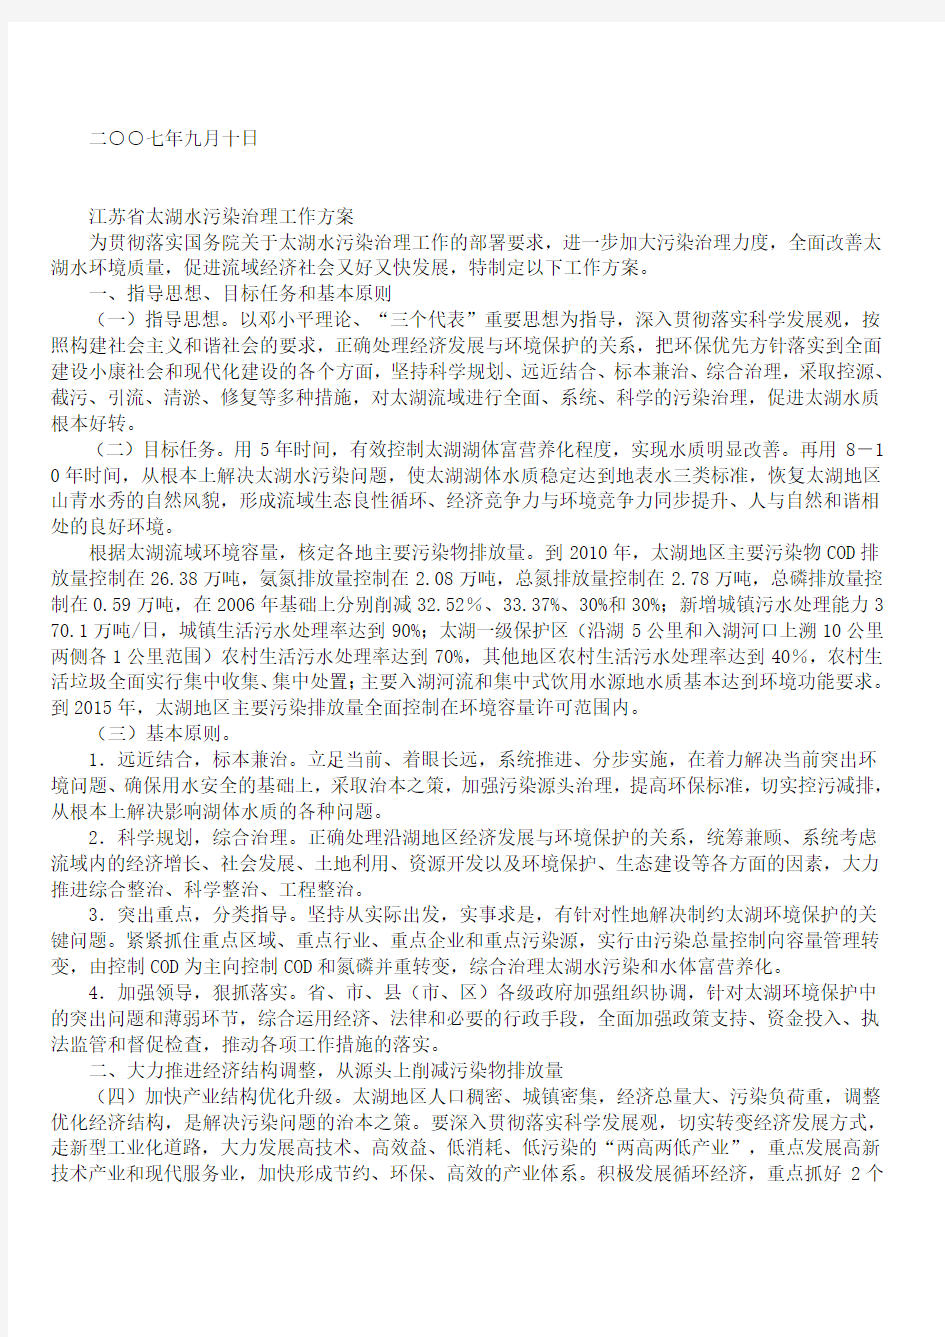 政府关于印发江苏省太湖水污染治理工作方案的通知